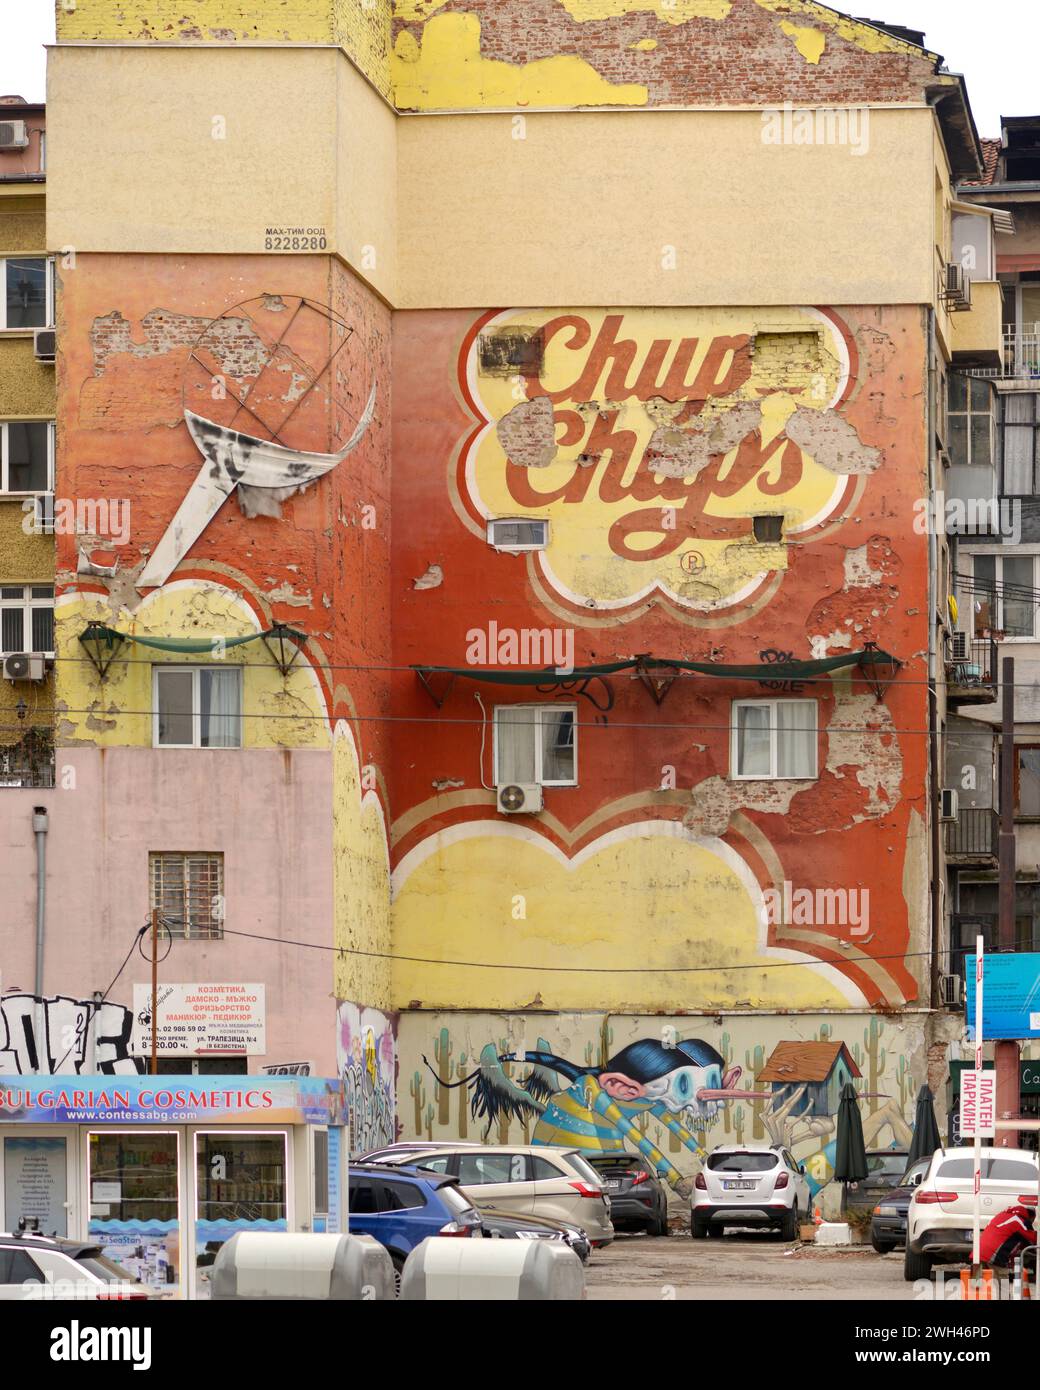 Verblasste alte Wandwerbung von Chupa Chups an verwitterten Fassadenwänden von Wohngebäuden in der Innenstadt von Sofia, Bulgarien, Osteuropa, Balkan, EU Stockfoto